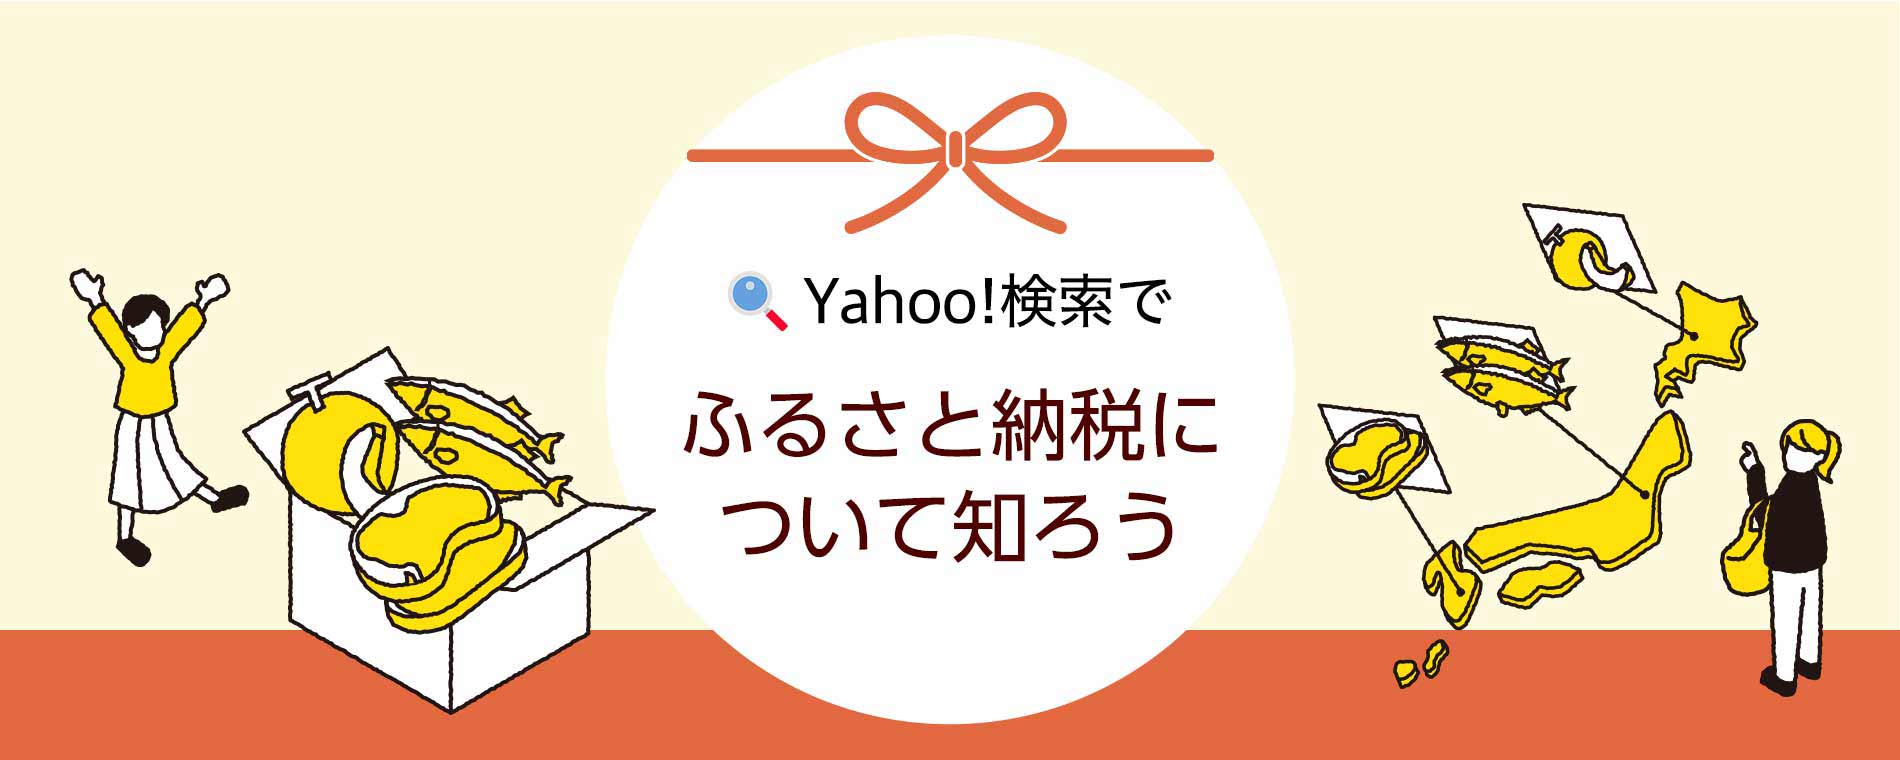 Yahoo!検索でふるさと納税の仕組みが簡単に分かる